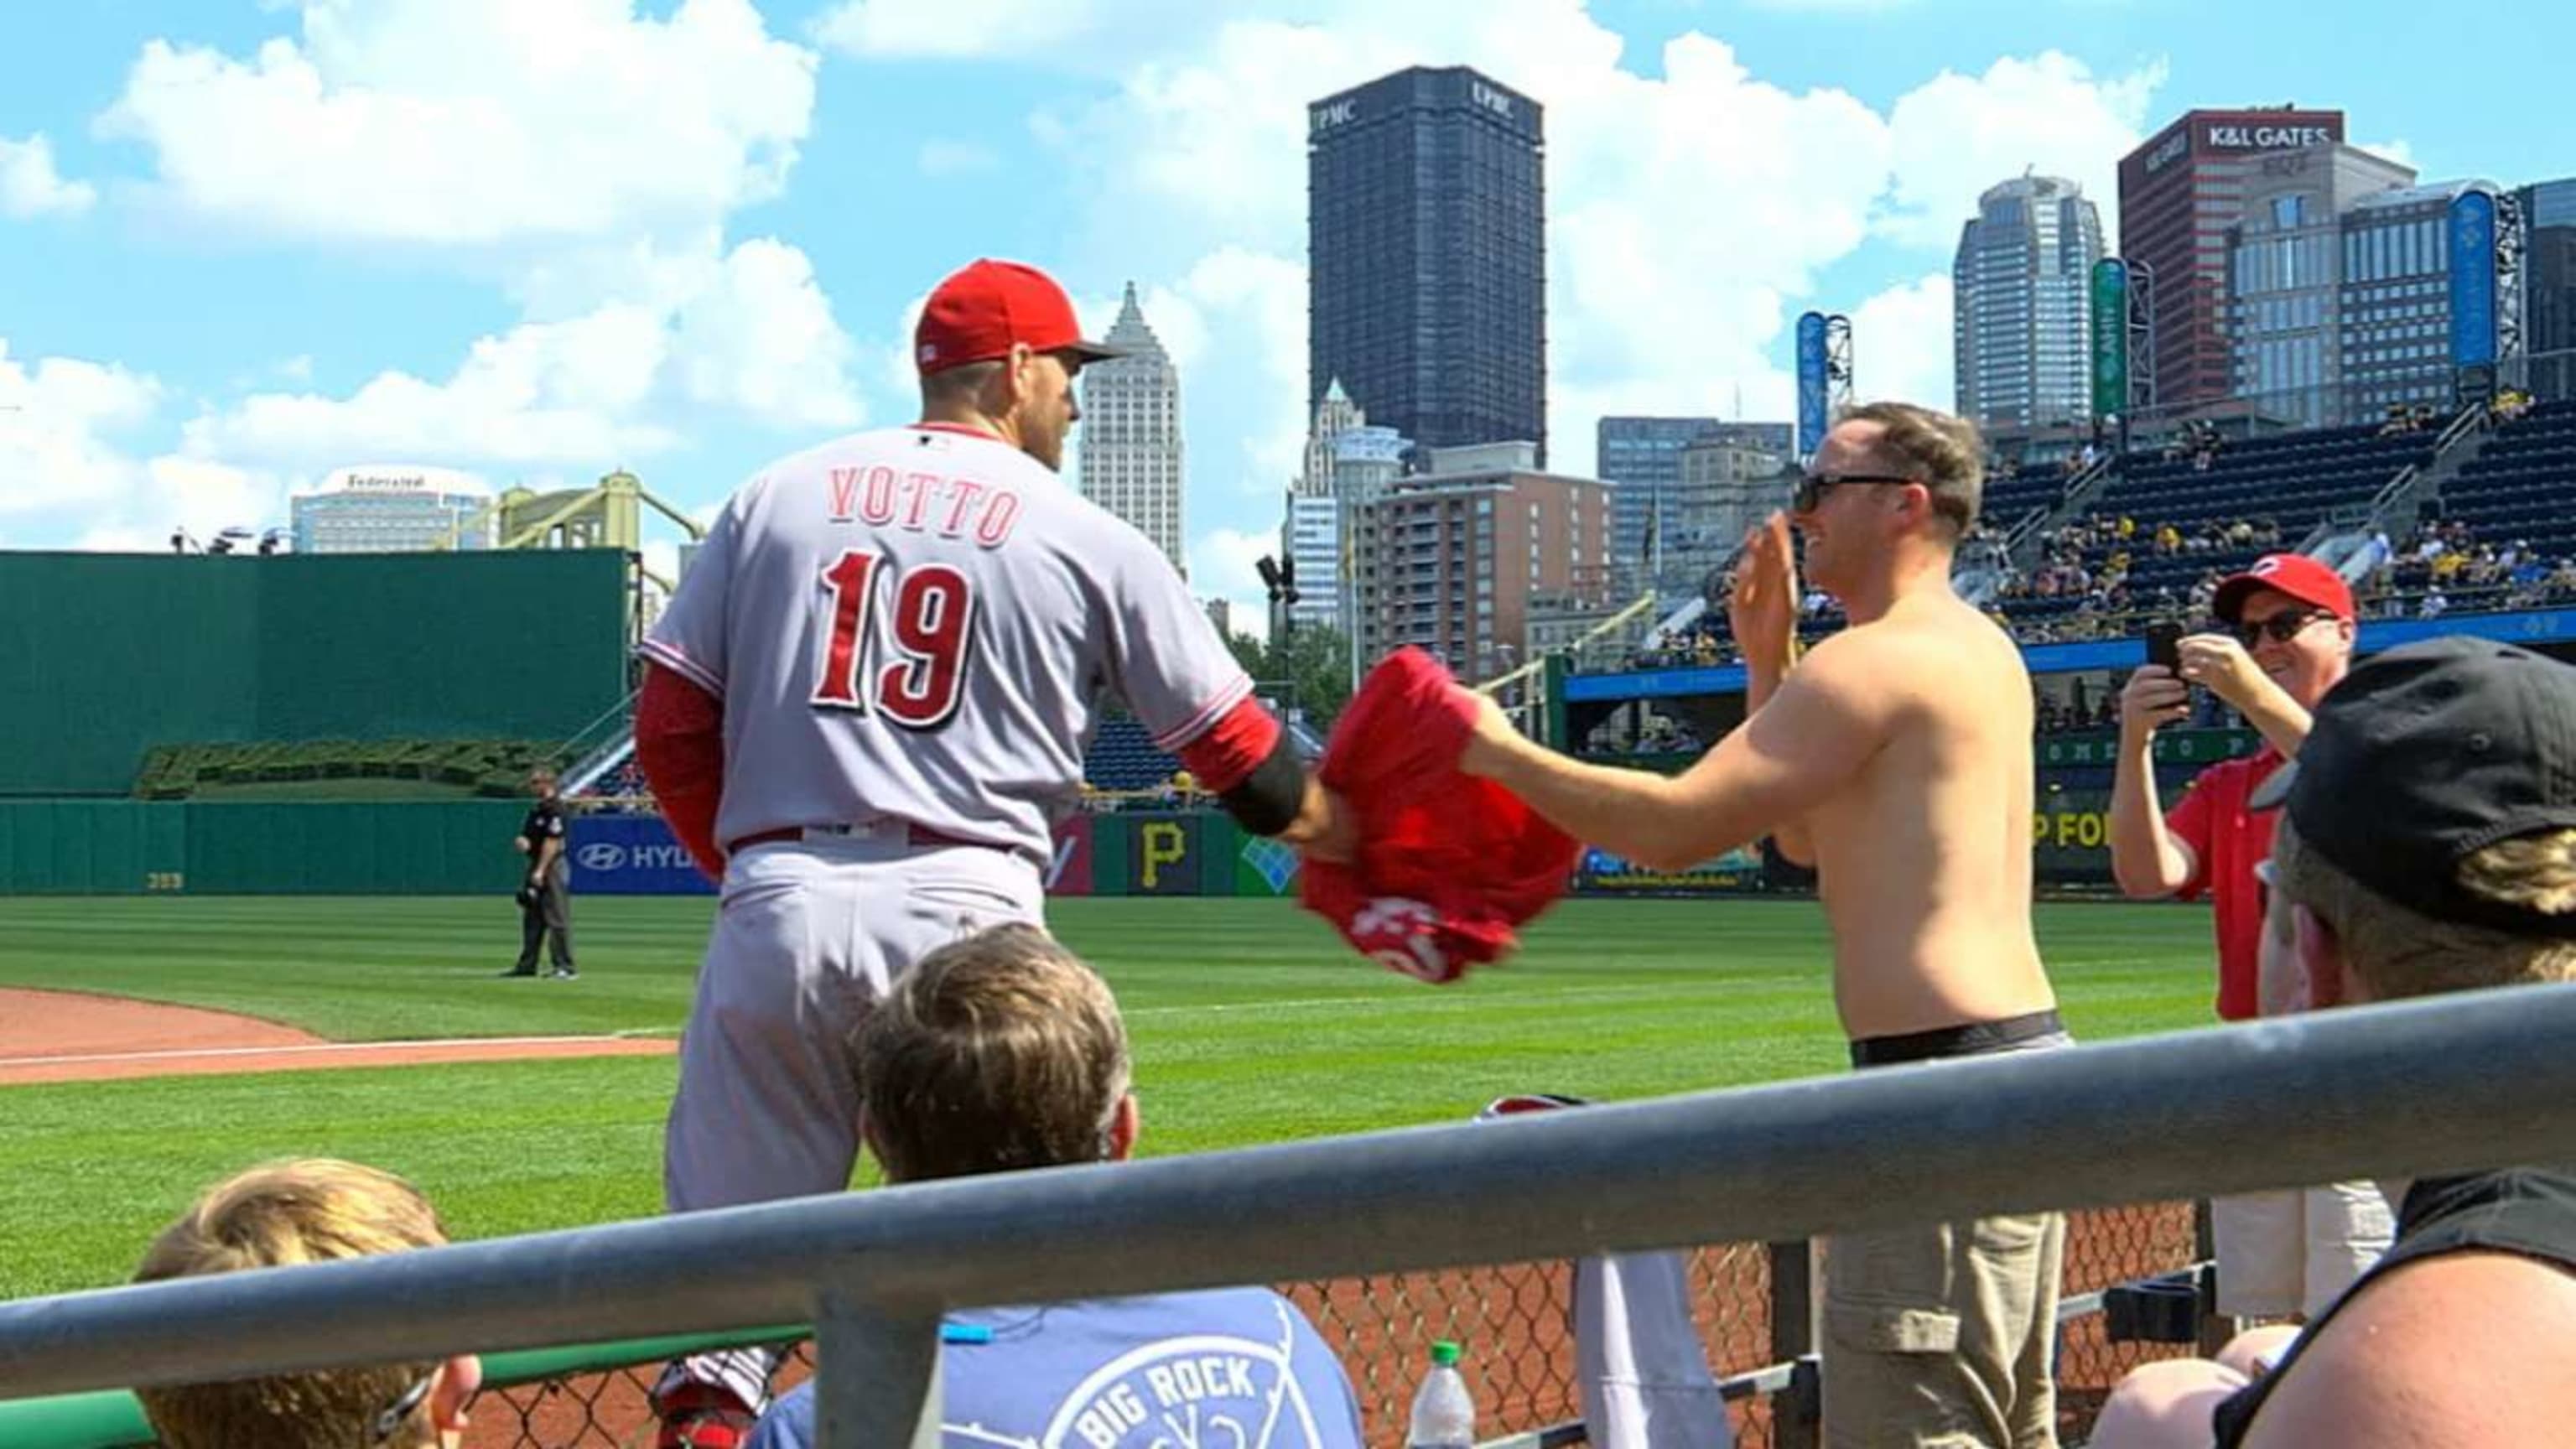 Cincinnati Reds MLB Baseball Jersey Shirt For Fans